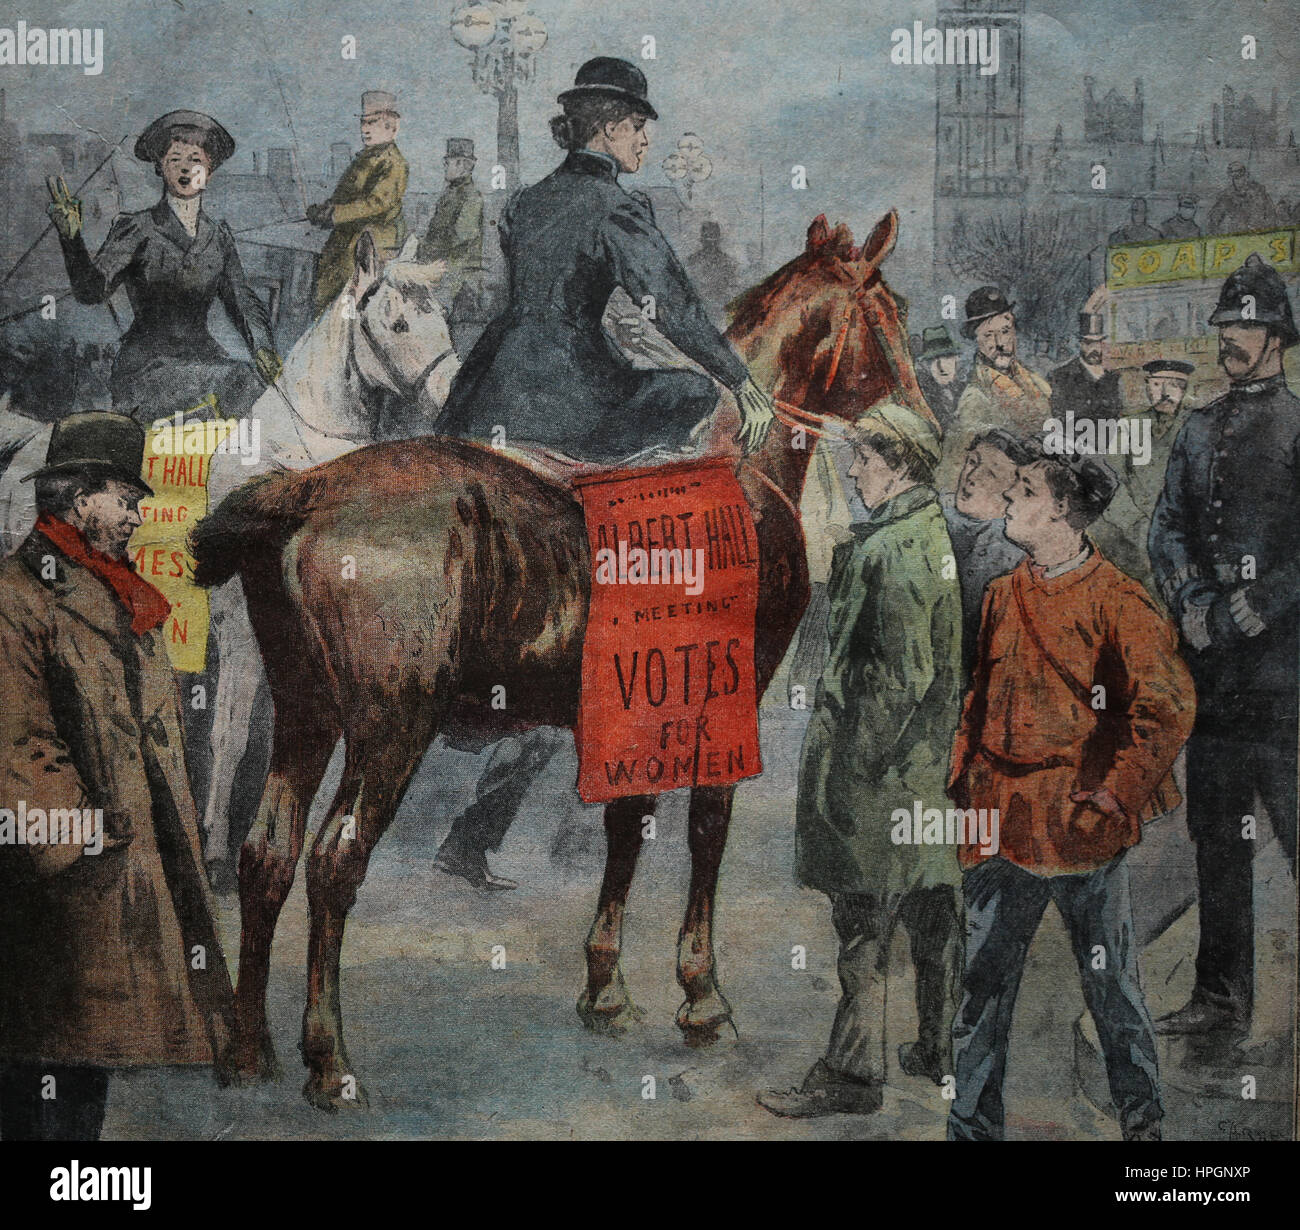 Suffragete Manifestación en Londres. Gran Bretaña, 1905. Le Petit Parisien. Suplemento Litteraire illustre. 15 novenber, 1905. Foto de stock